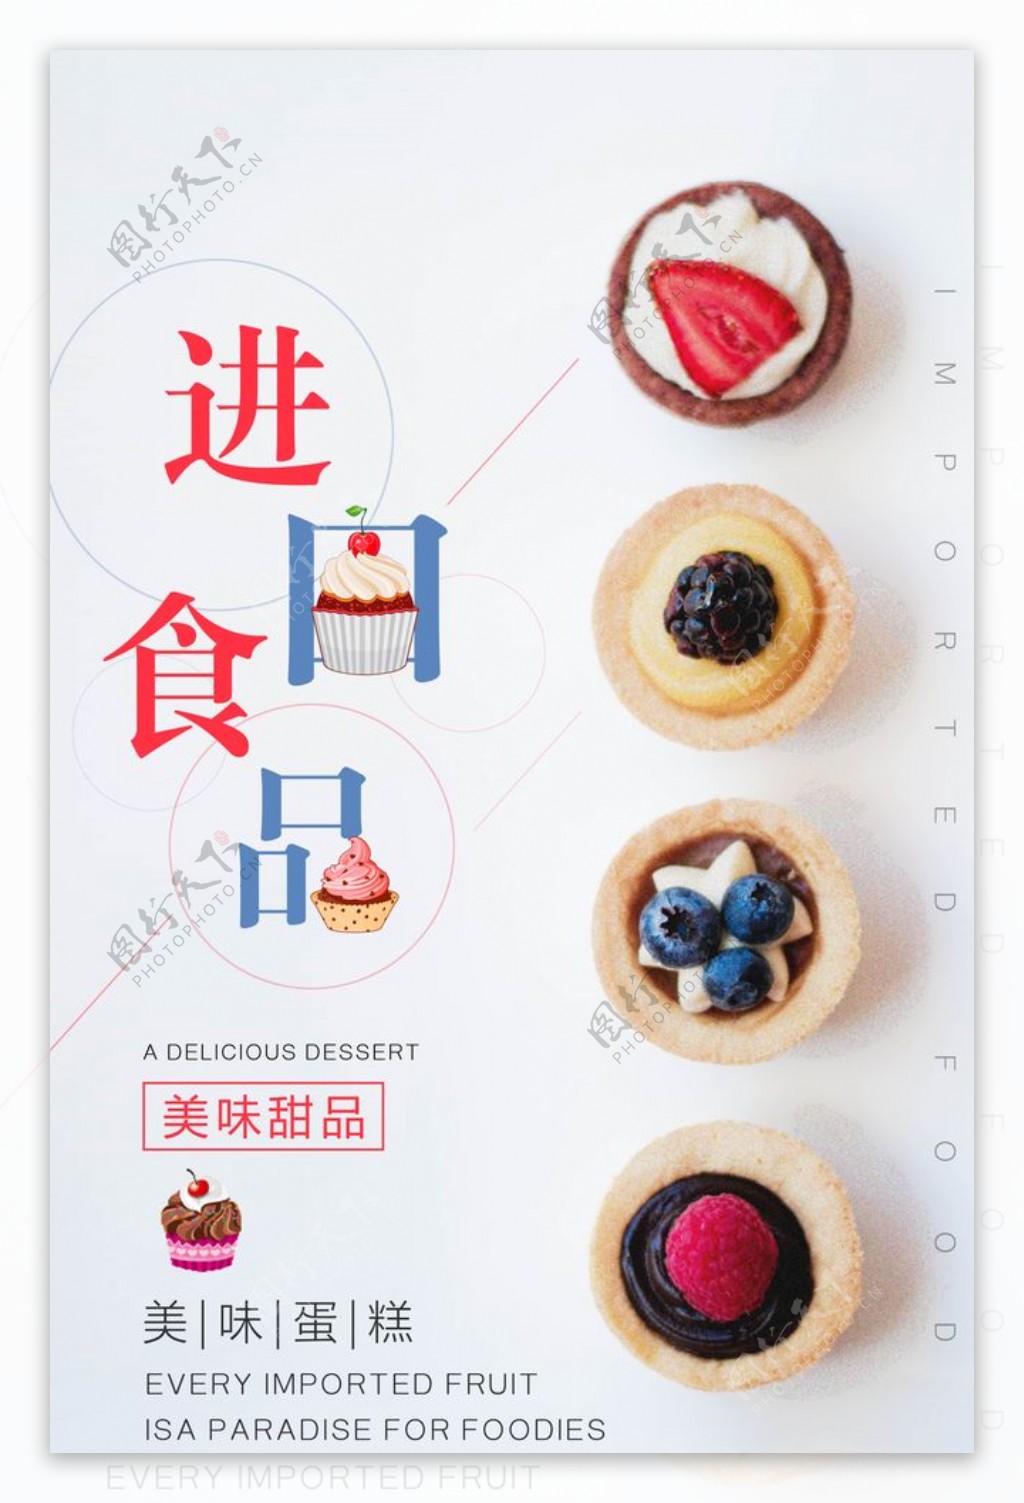 进口美食甜品活动宣传海报图片